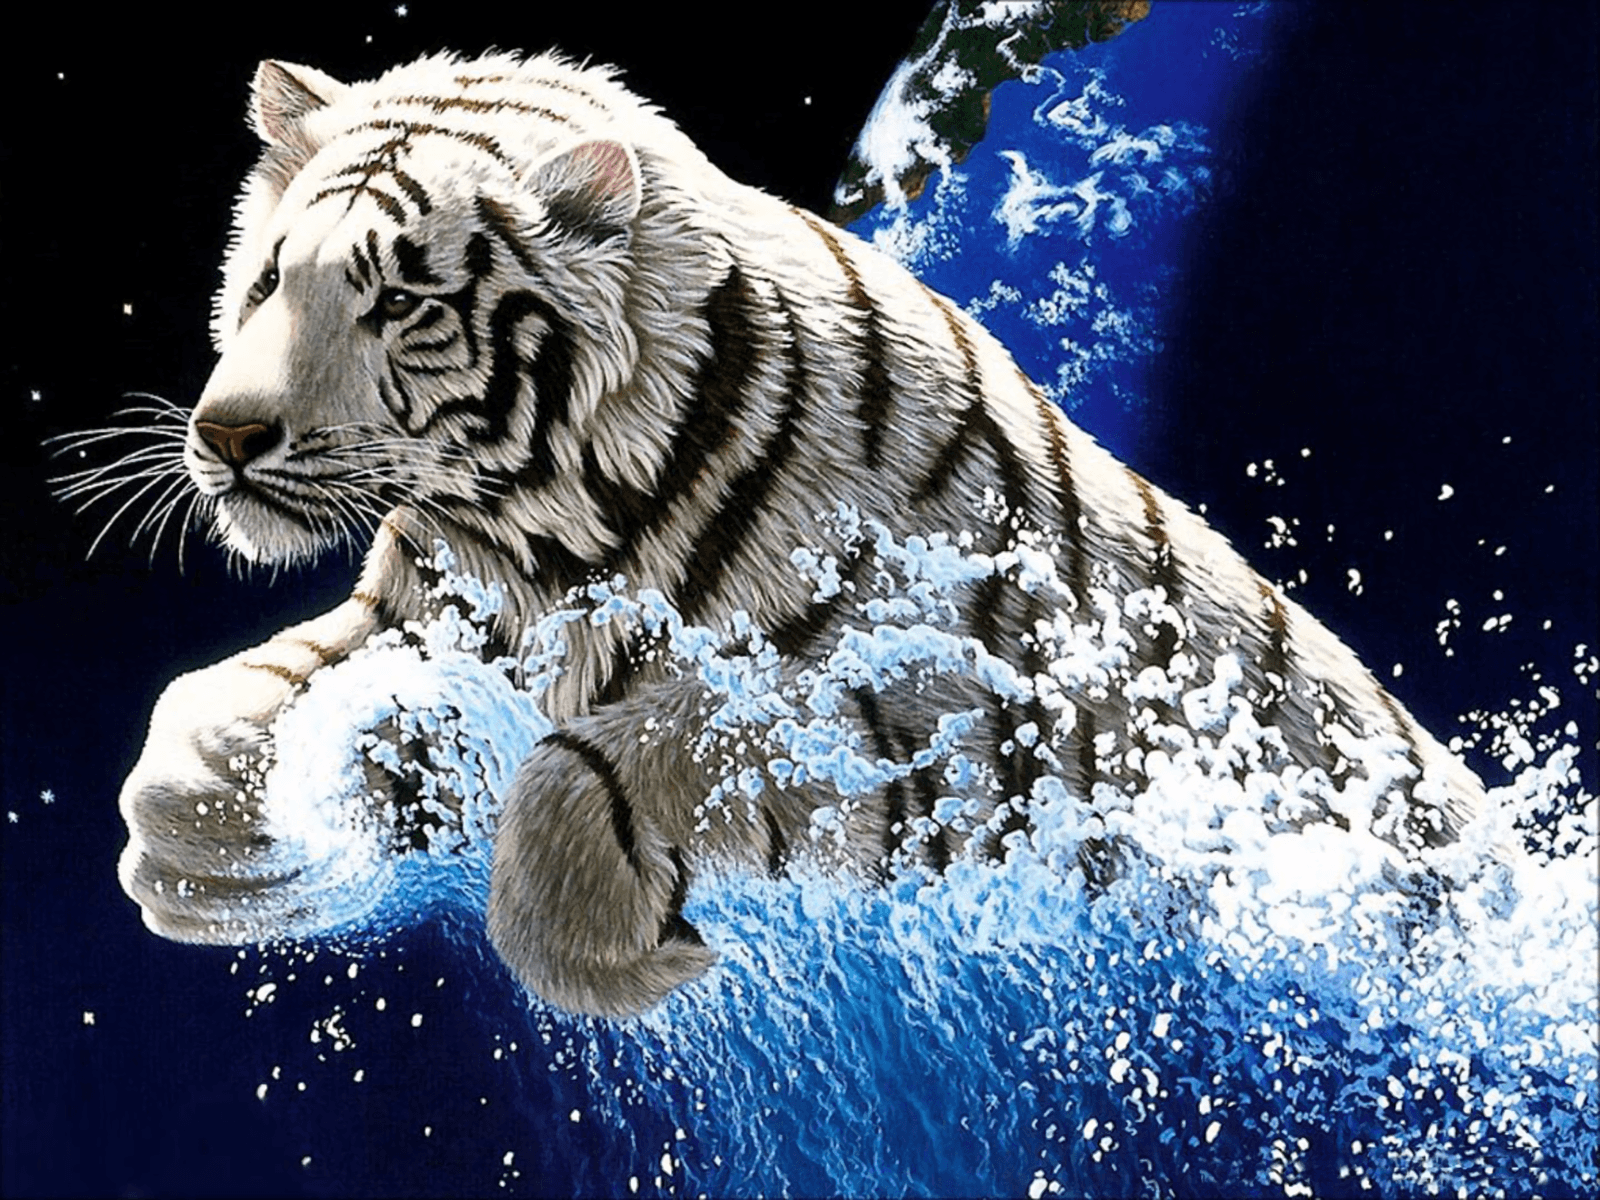 Wallpaper Macan Putih 3d Image Num 88